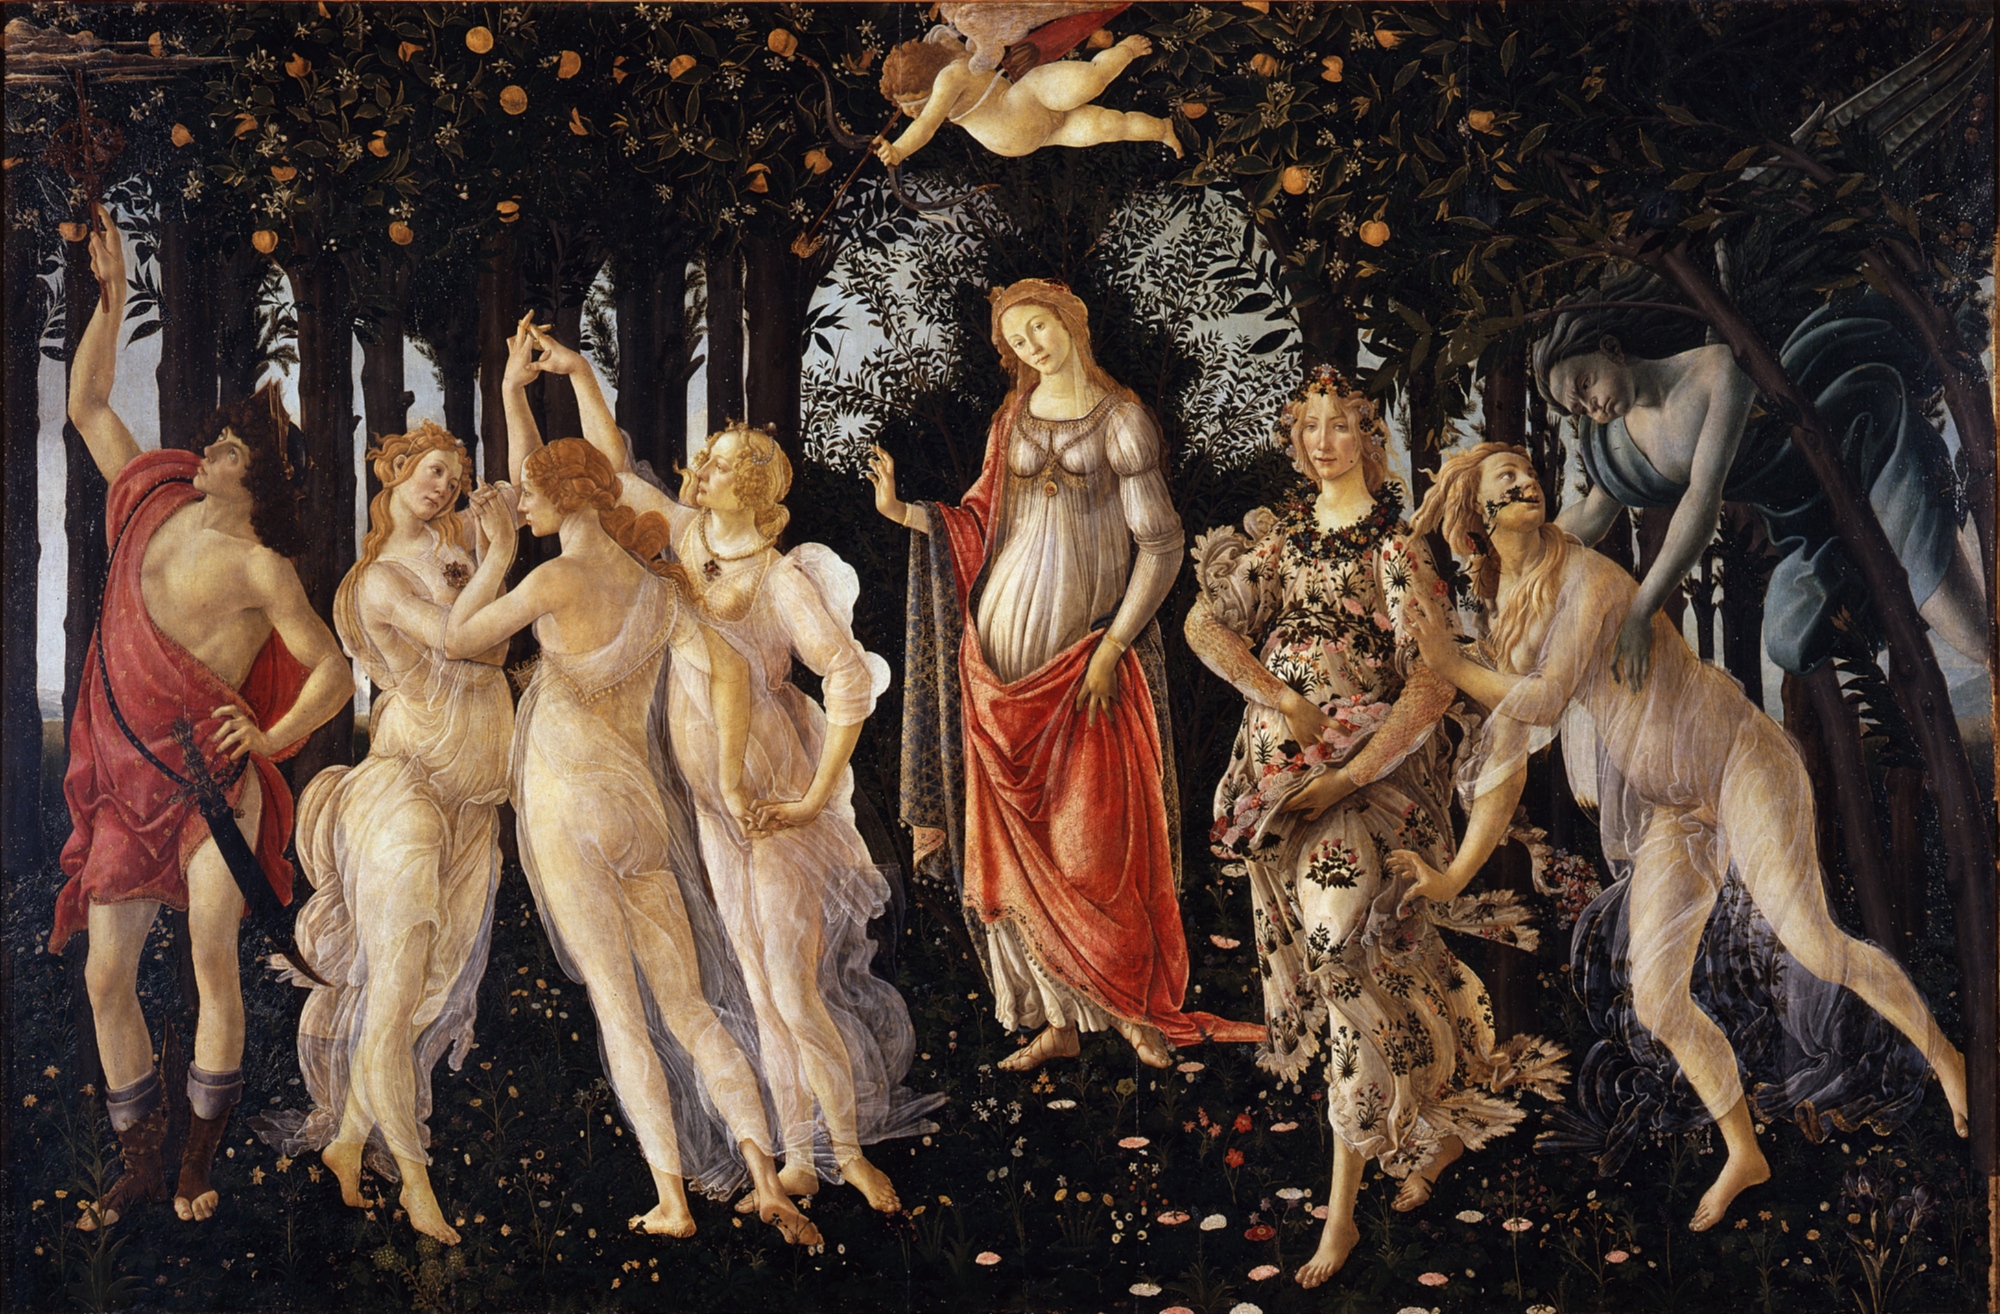 La Primavera - S. Botticelli